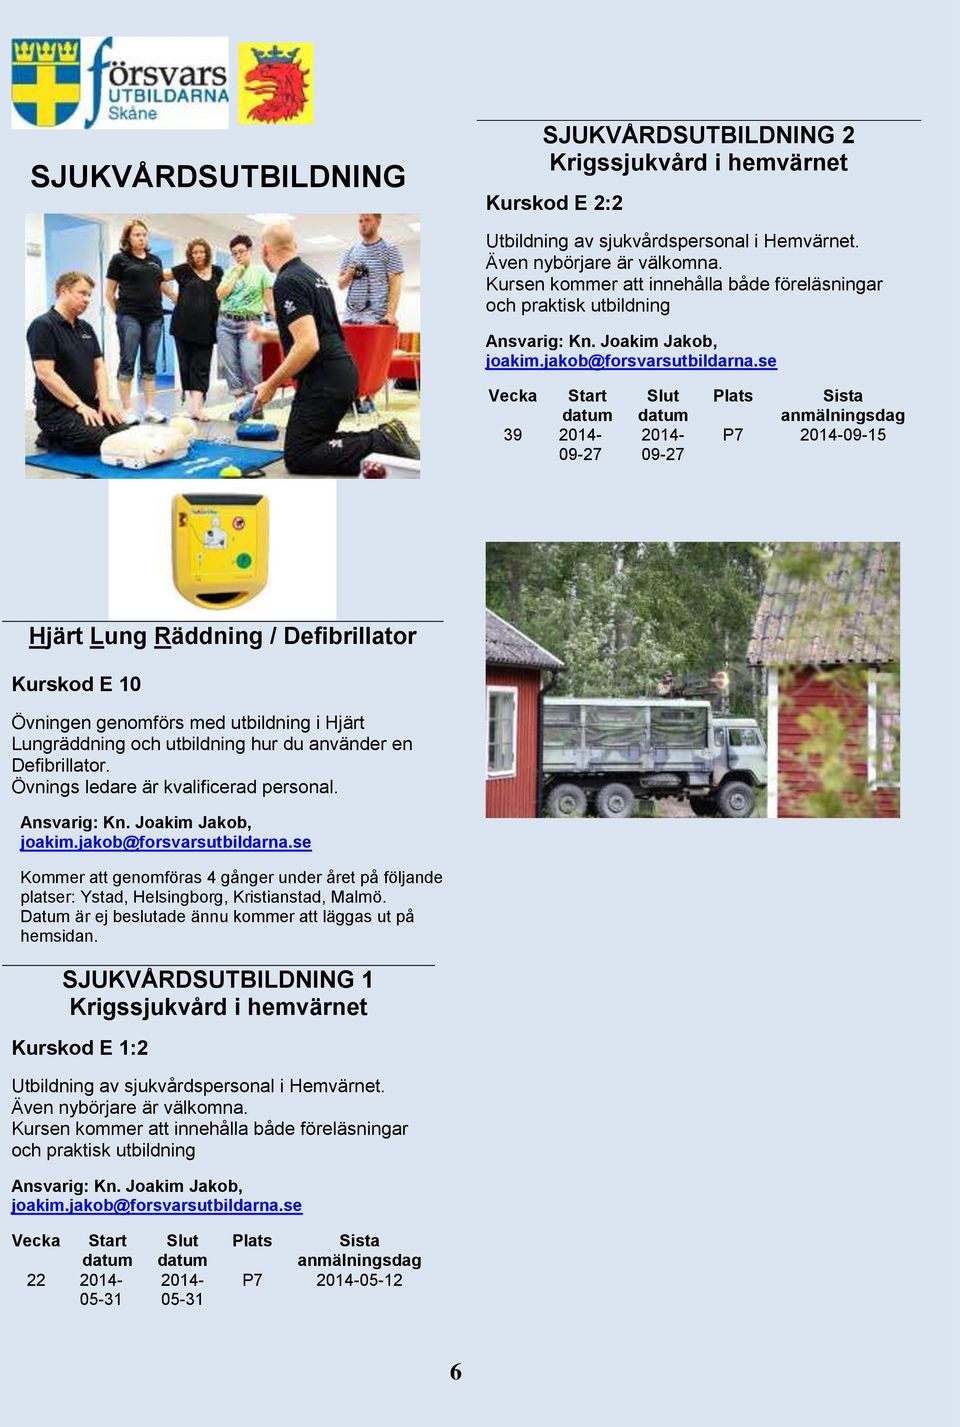 hur du använder en Defibrillator. Övnings ledare är kvalificerad personal. Kommer att genomföras 4 gånger under året på följande platser: Ystad, Helsingborg, Kristianstad, Malmö.